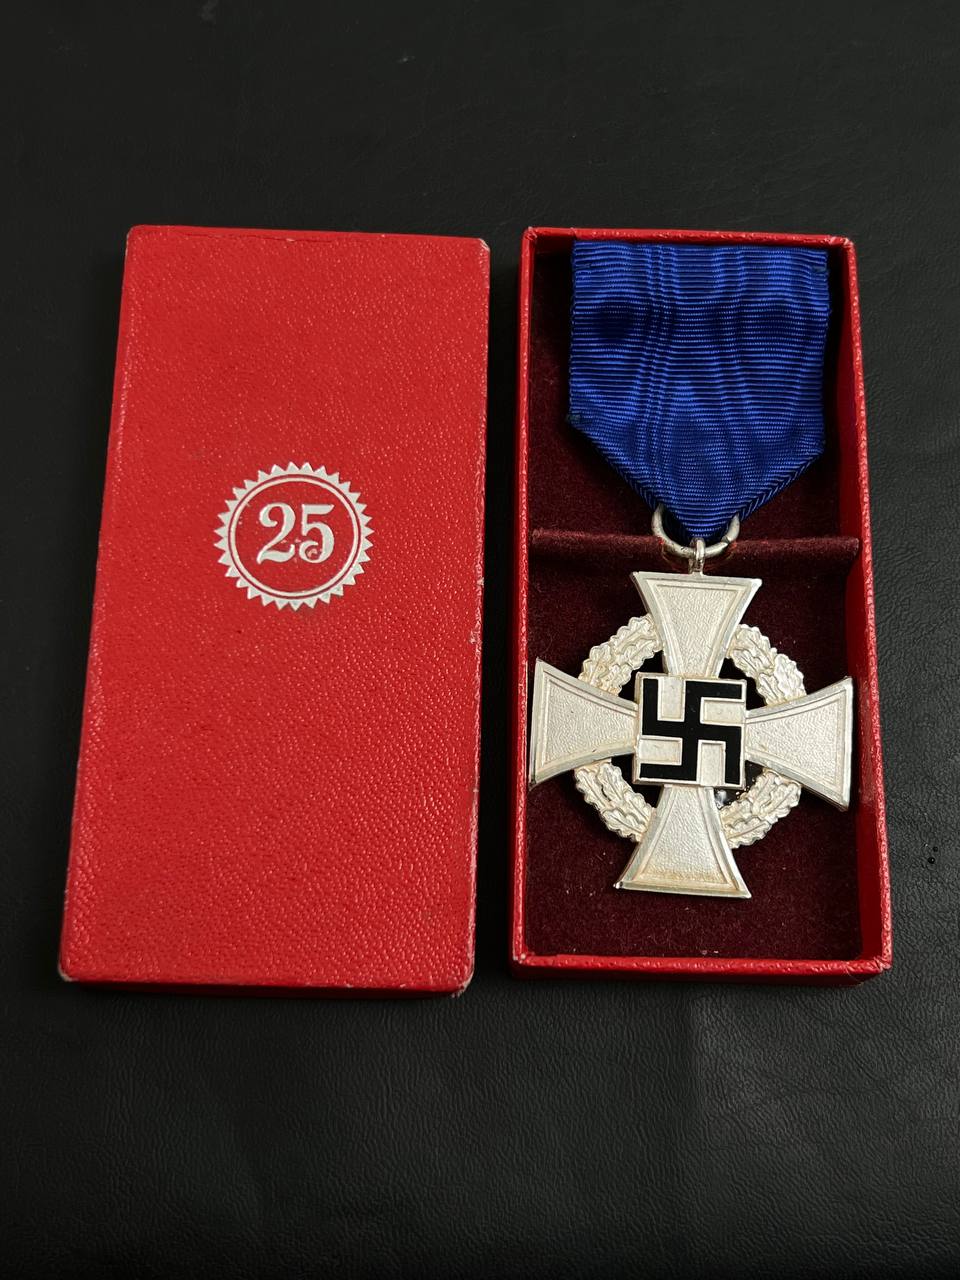 Медаль За 25 лет гражданской выслуги в коробке. От Алексея С.